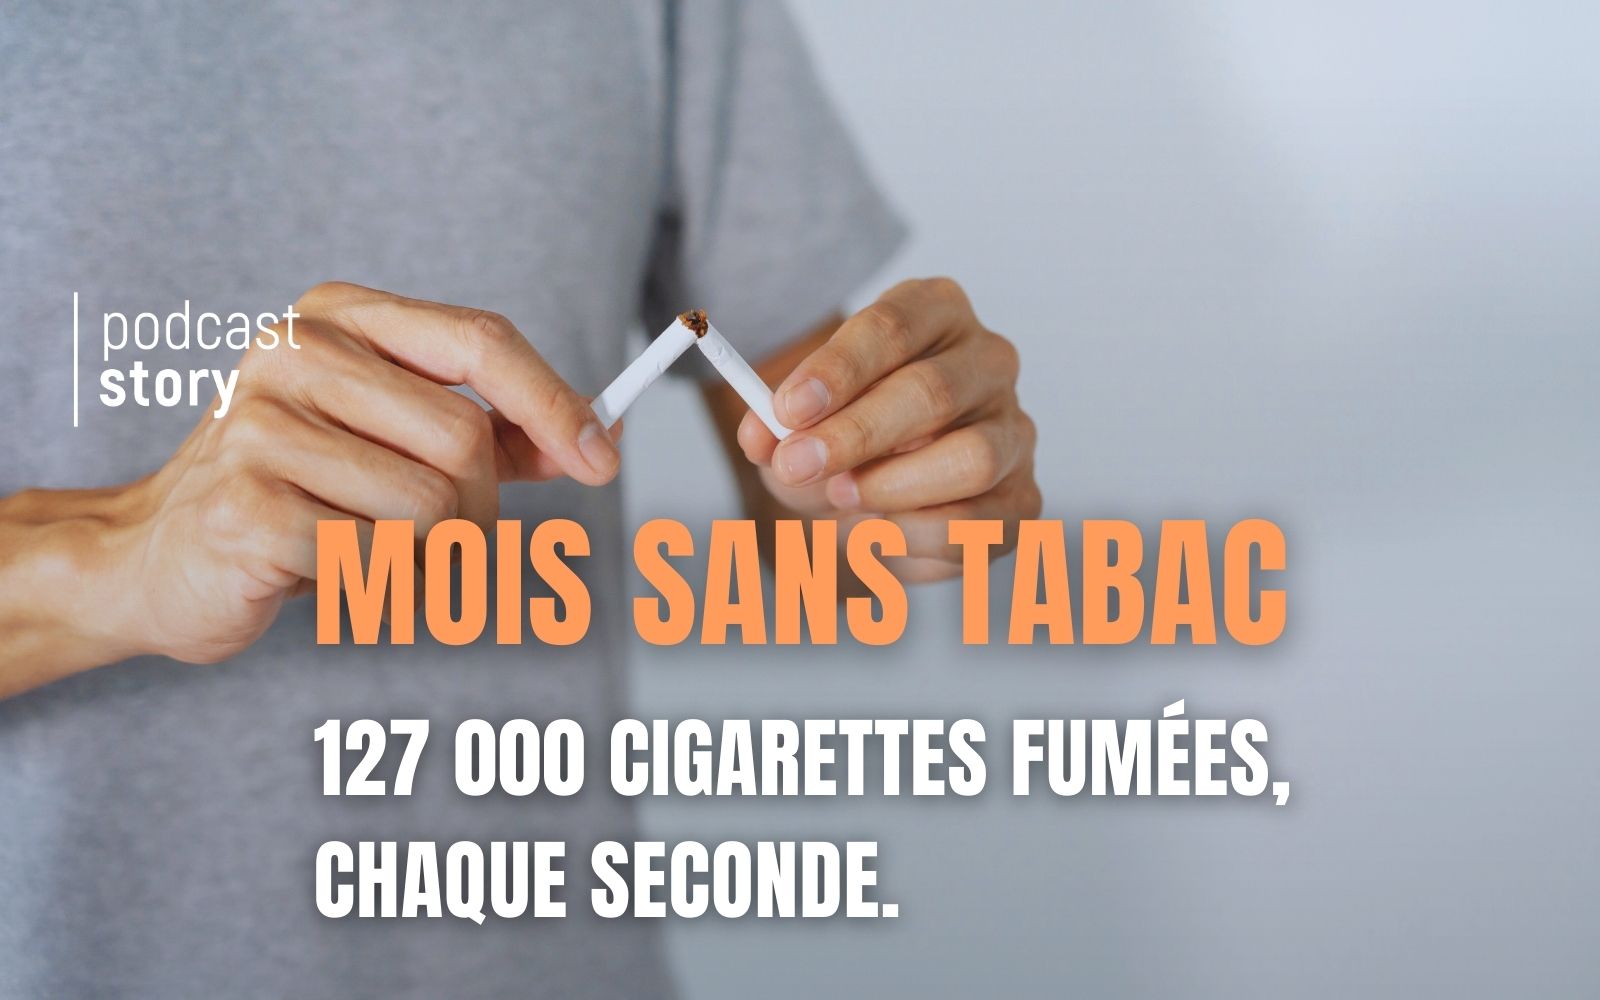 MOIS SANS TABAC, 127 000 CIGARETTES FUMÉES CHAQUE SECONDE